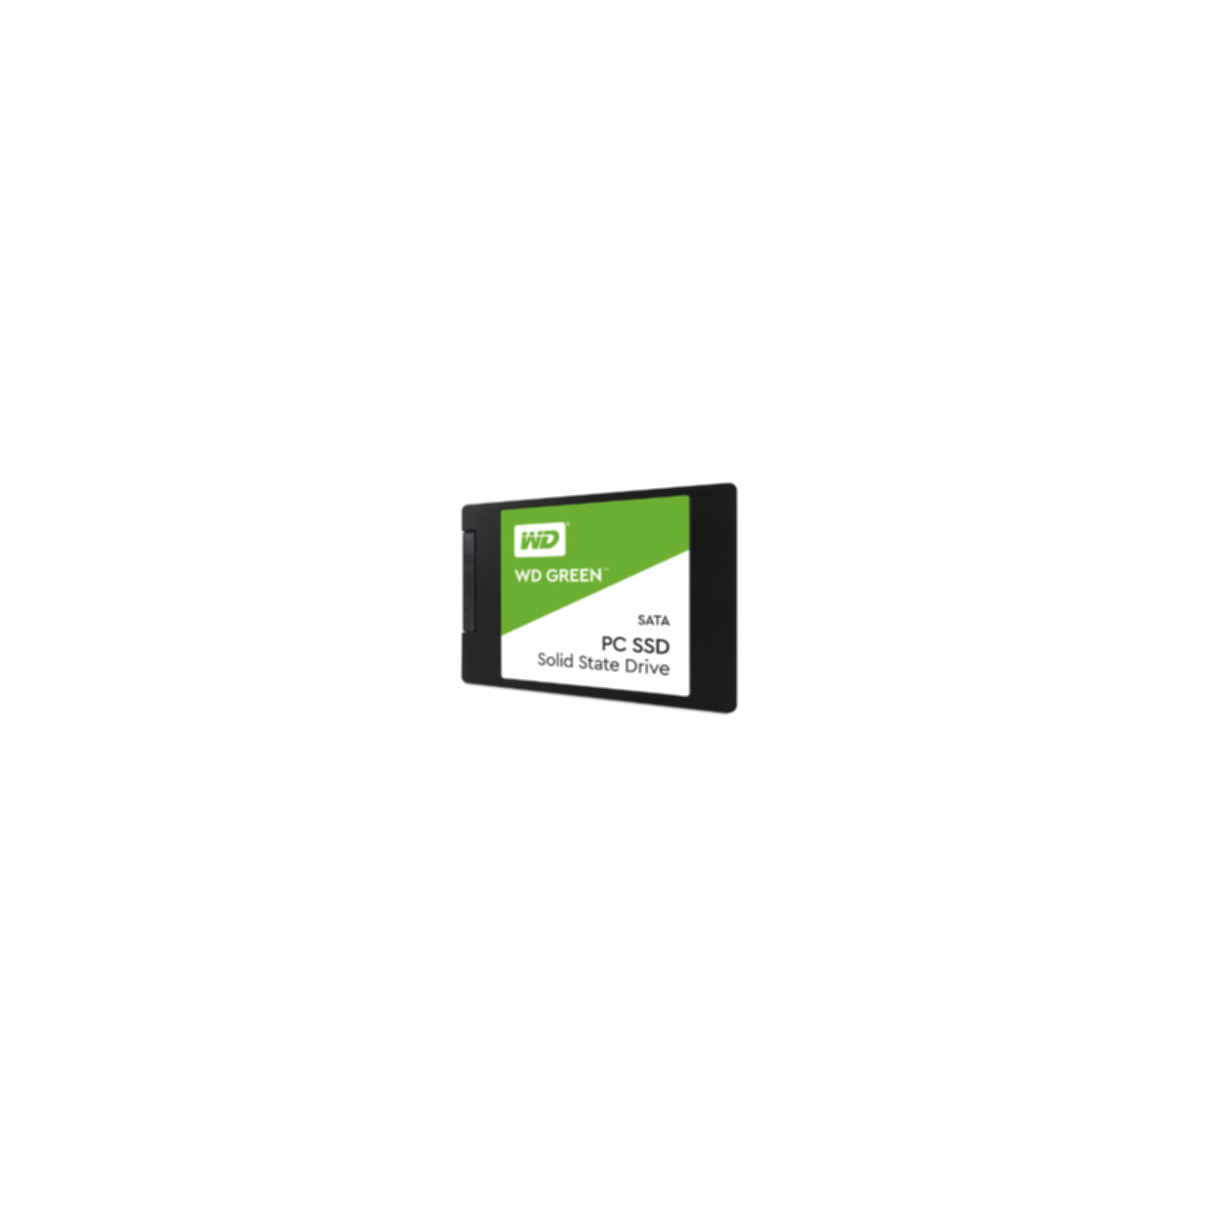 WESTERN 480 Green, GB, intern WD SSD, DIGITAL